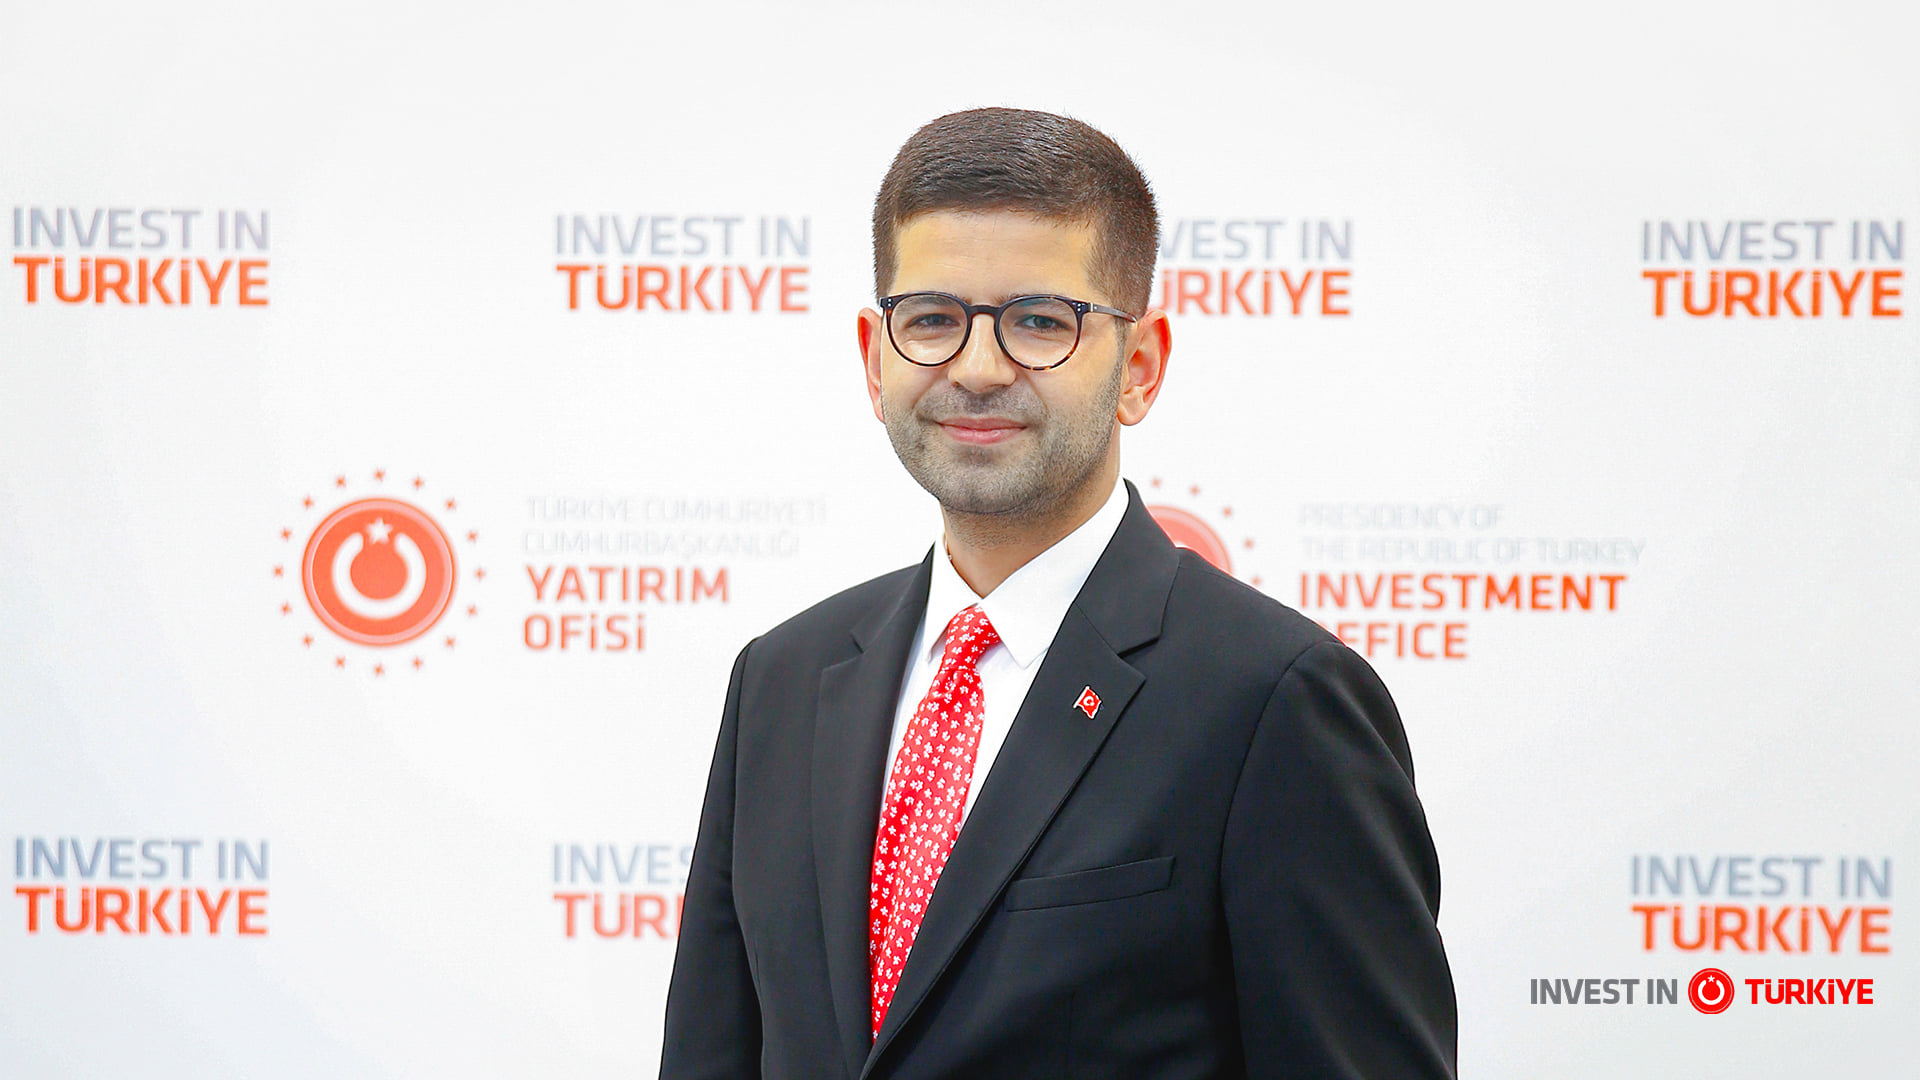 Turchia: pubblicata la guida dell’Ufficio Investimenti